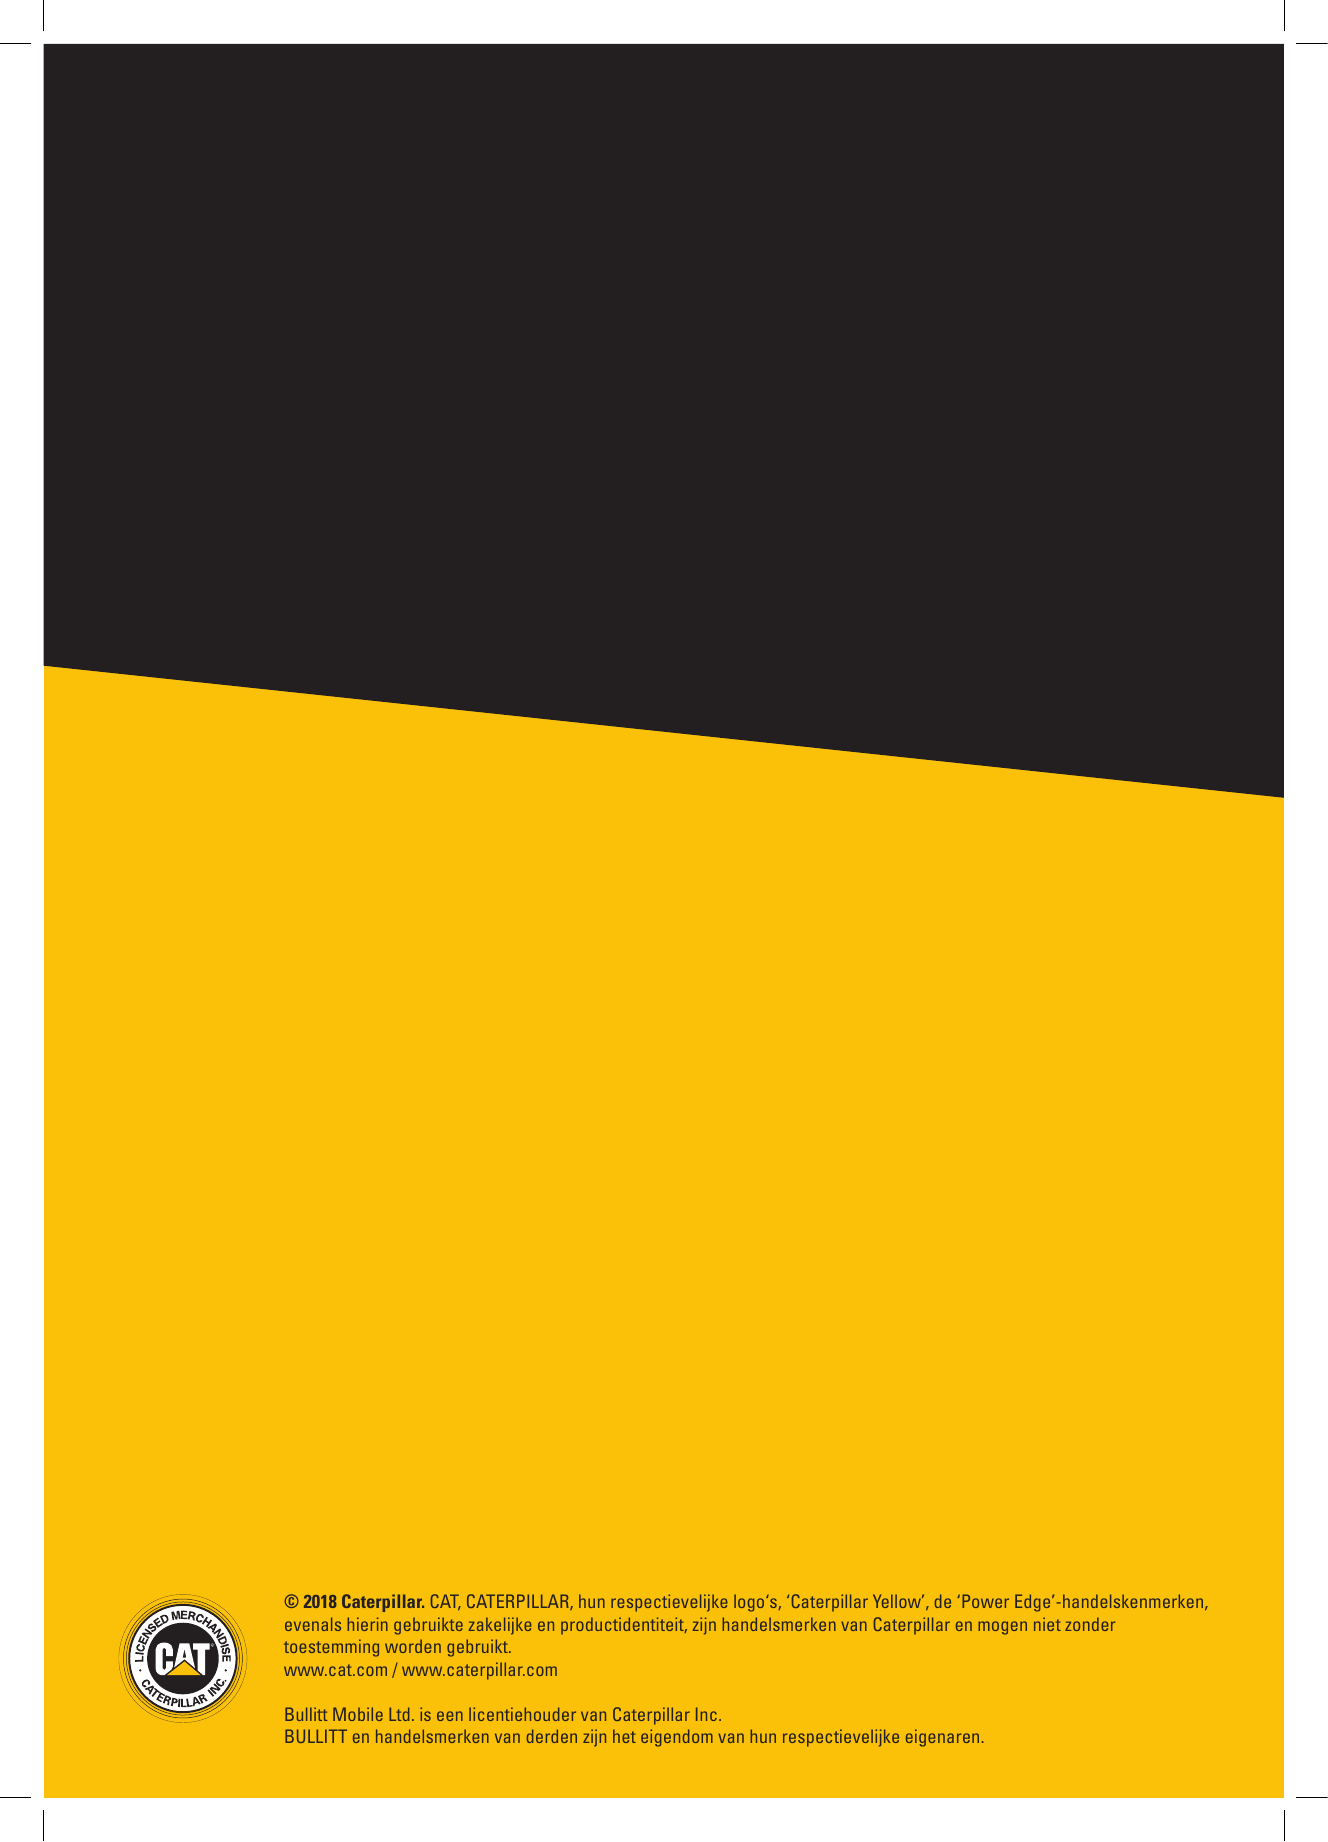 © 2018 Caterpillar. CAT, CATERPILLAR, hun respectievelijke logo‘s, ‘Caterpillar Yellow’, de ‘Power Edge’-handelskenmerken,evenal